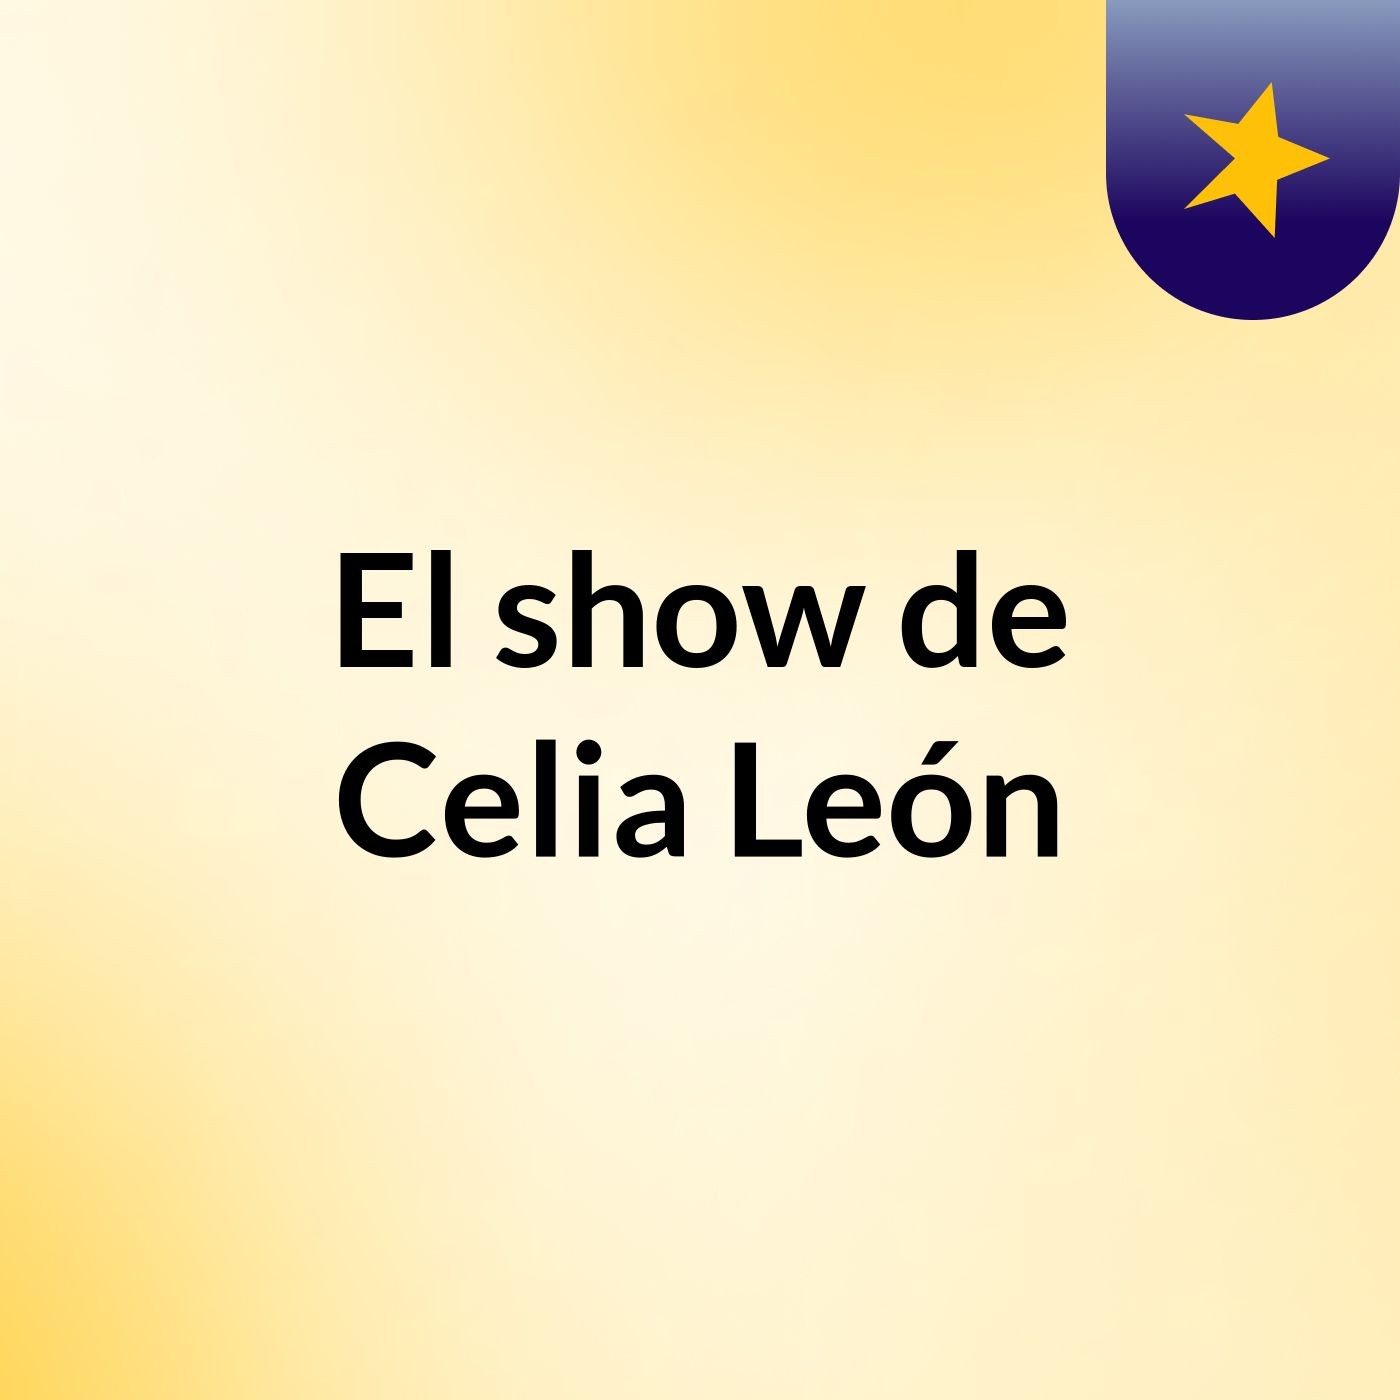 El show de Celia León